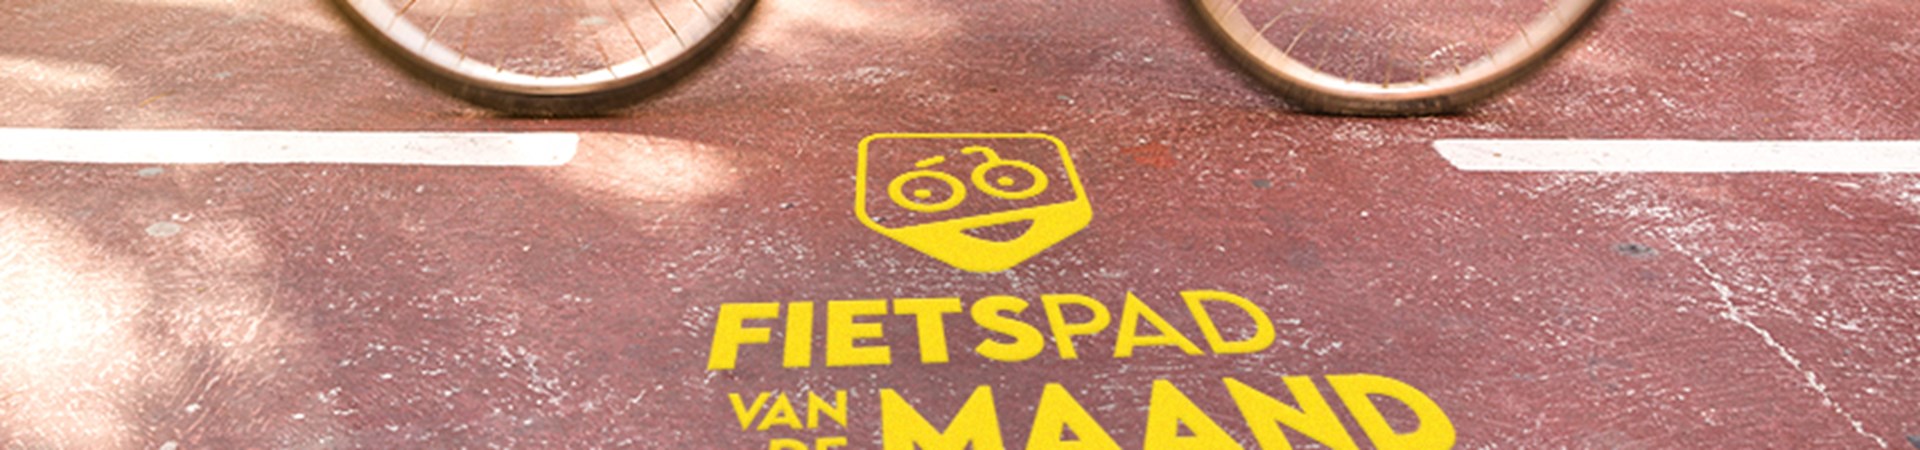 Fietspad Van De Maand fotovariant 1